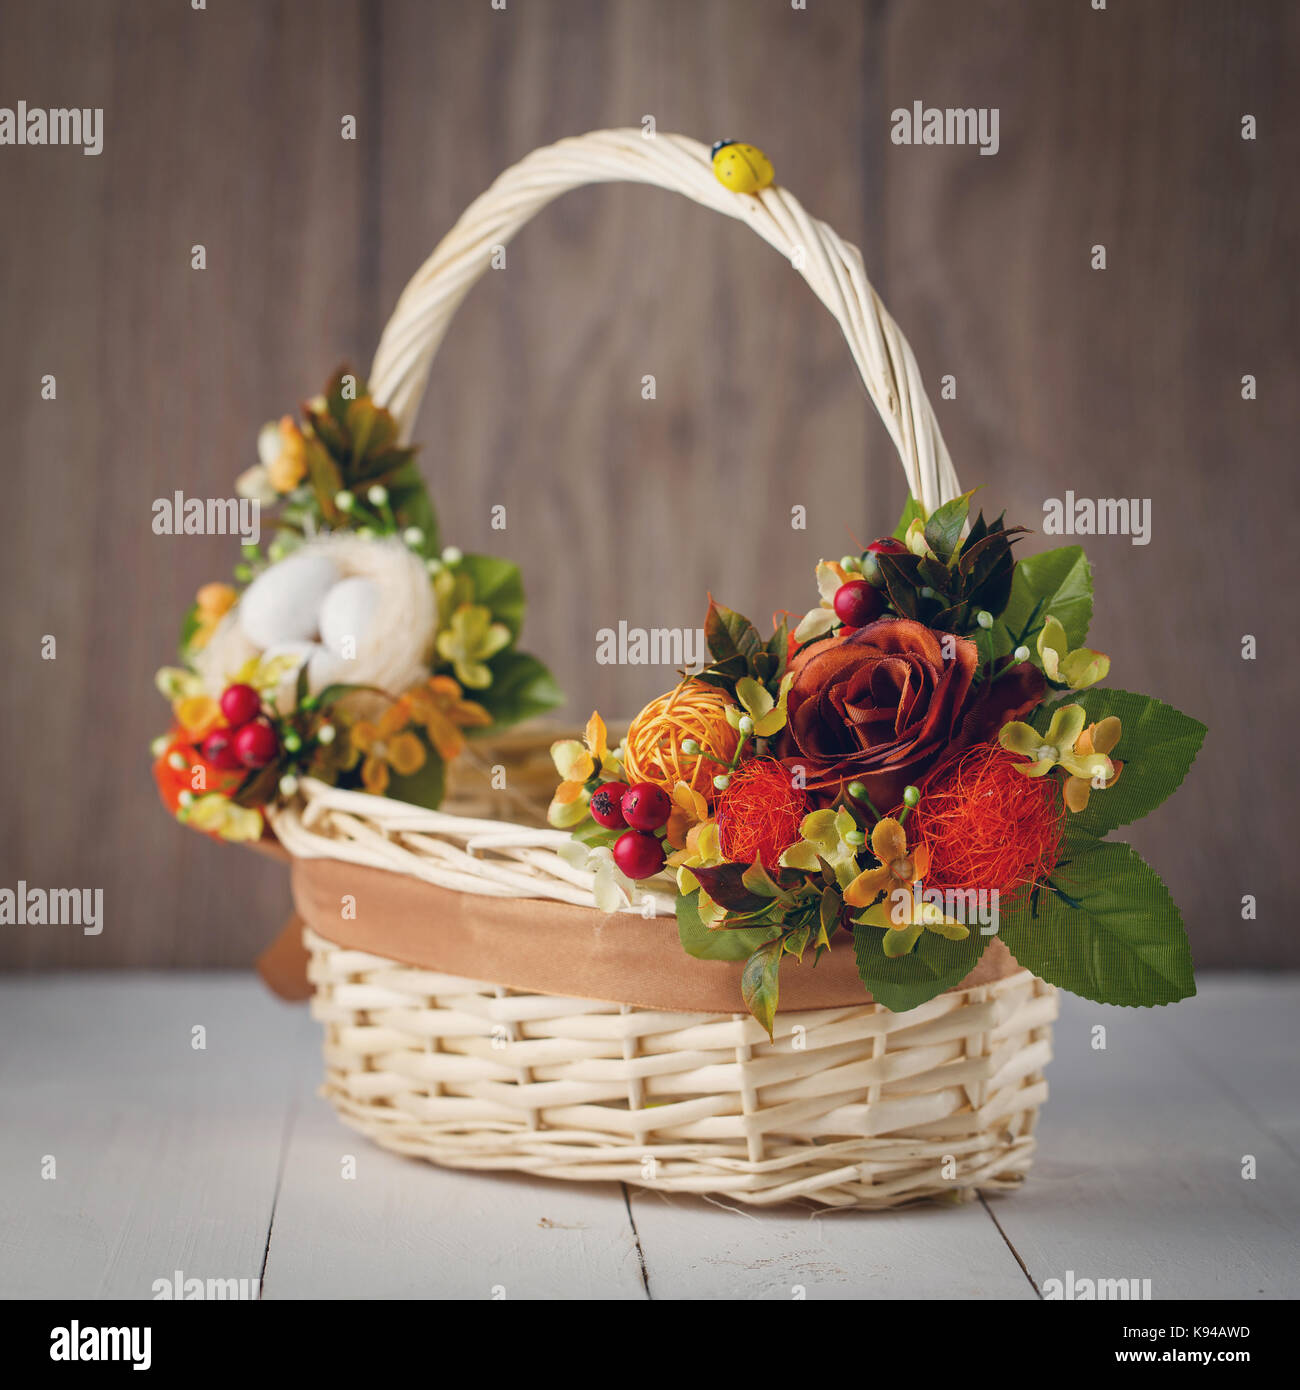 Panier de fleurs pour célébrer Pâques sur un fond de bois Banque D'Images